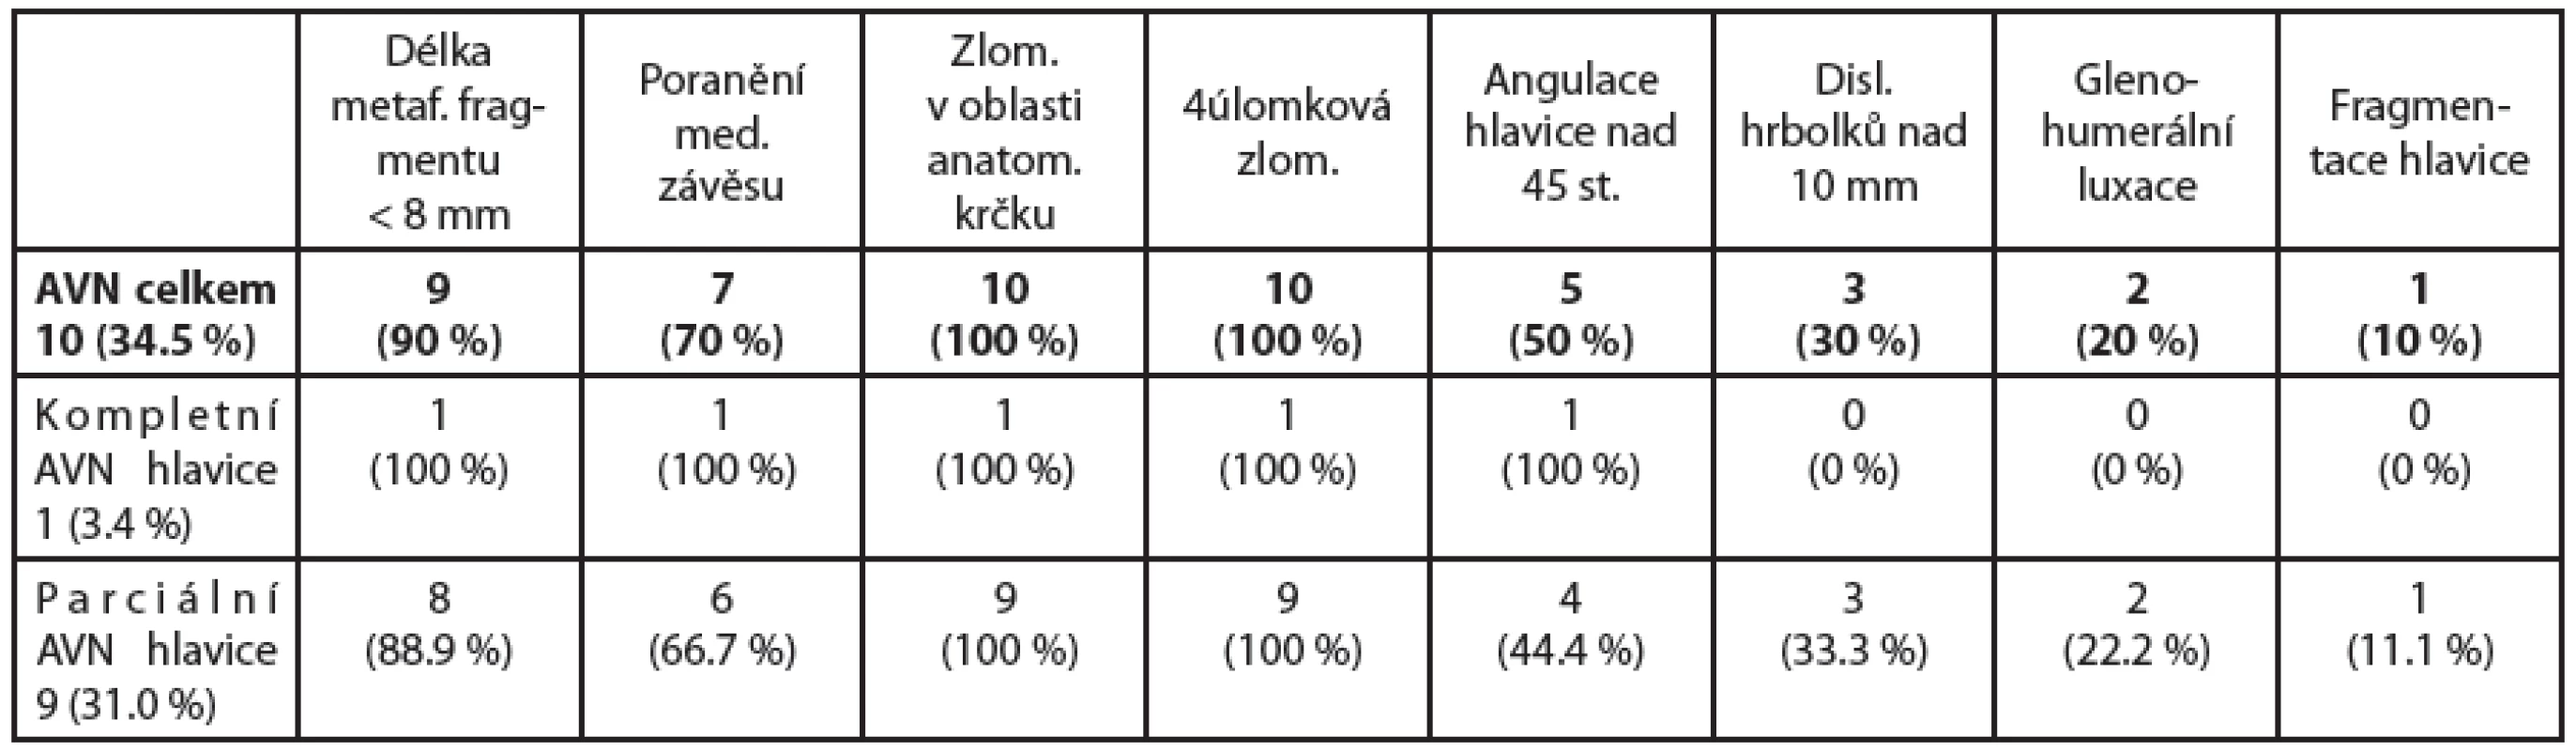 V tabulce uvádíme počet námi zjištěných osteonekróz (AVN) hlavice celkem a rozdělení na parciální a kompletní nekrózu. Dále jsou zobrazeny námi určené prediktory ischemie hlavice a jejich výskyt v počtu i procentuálním zastoupení.